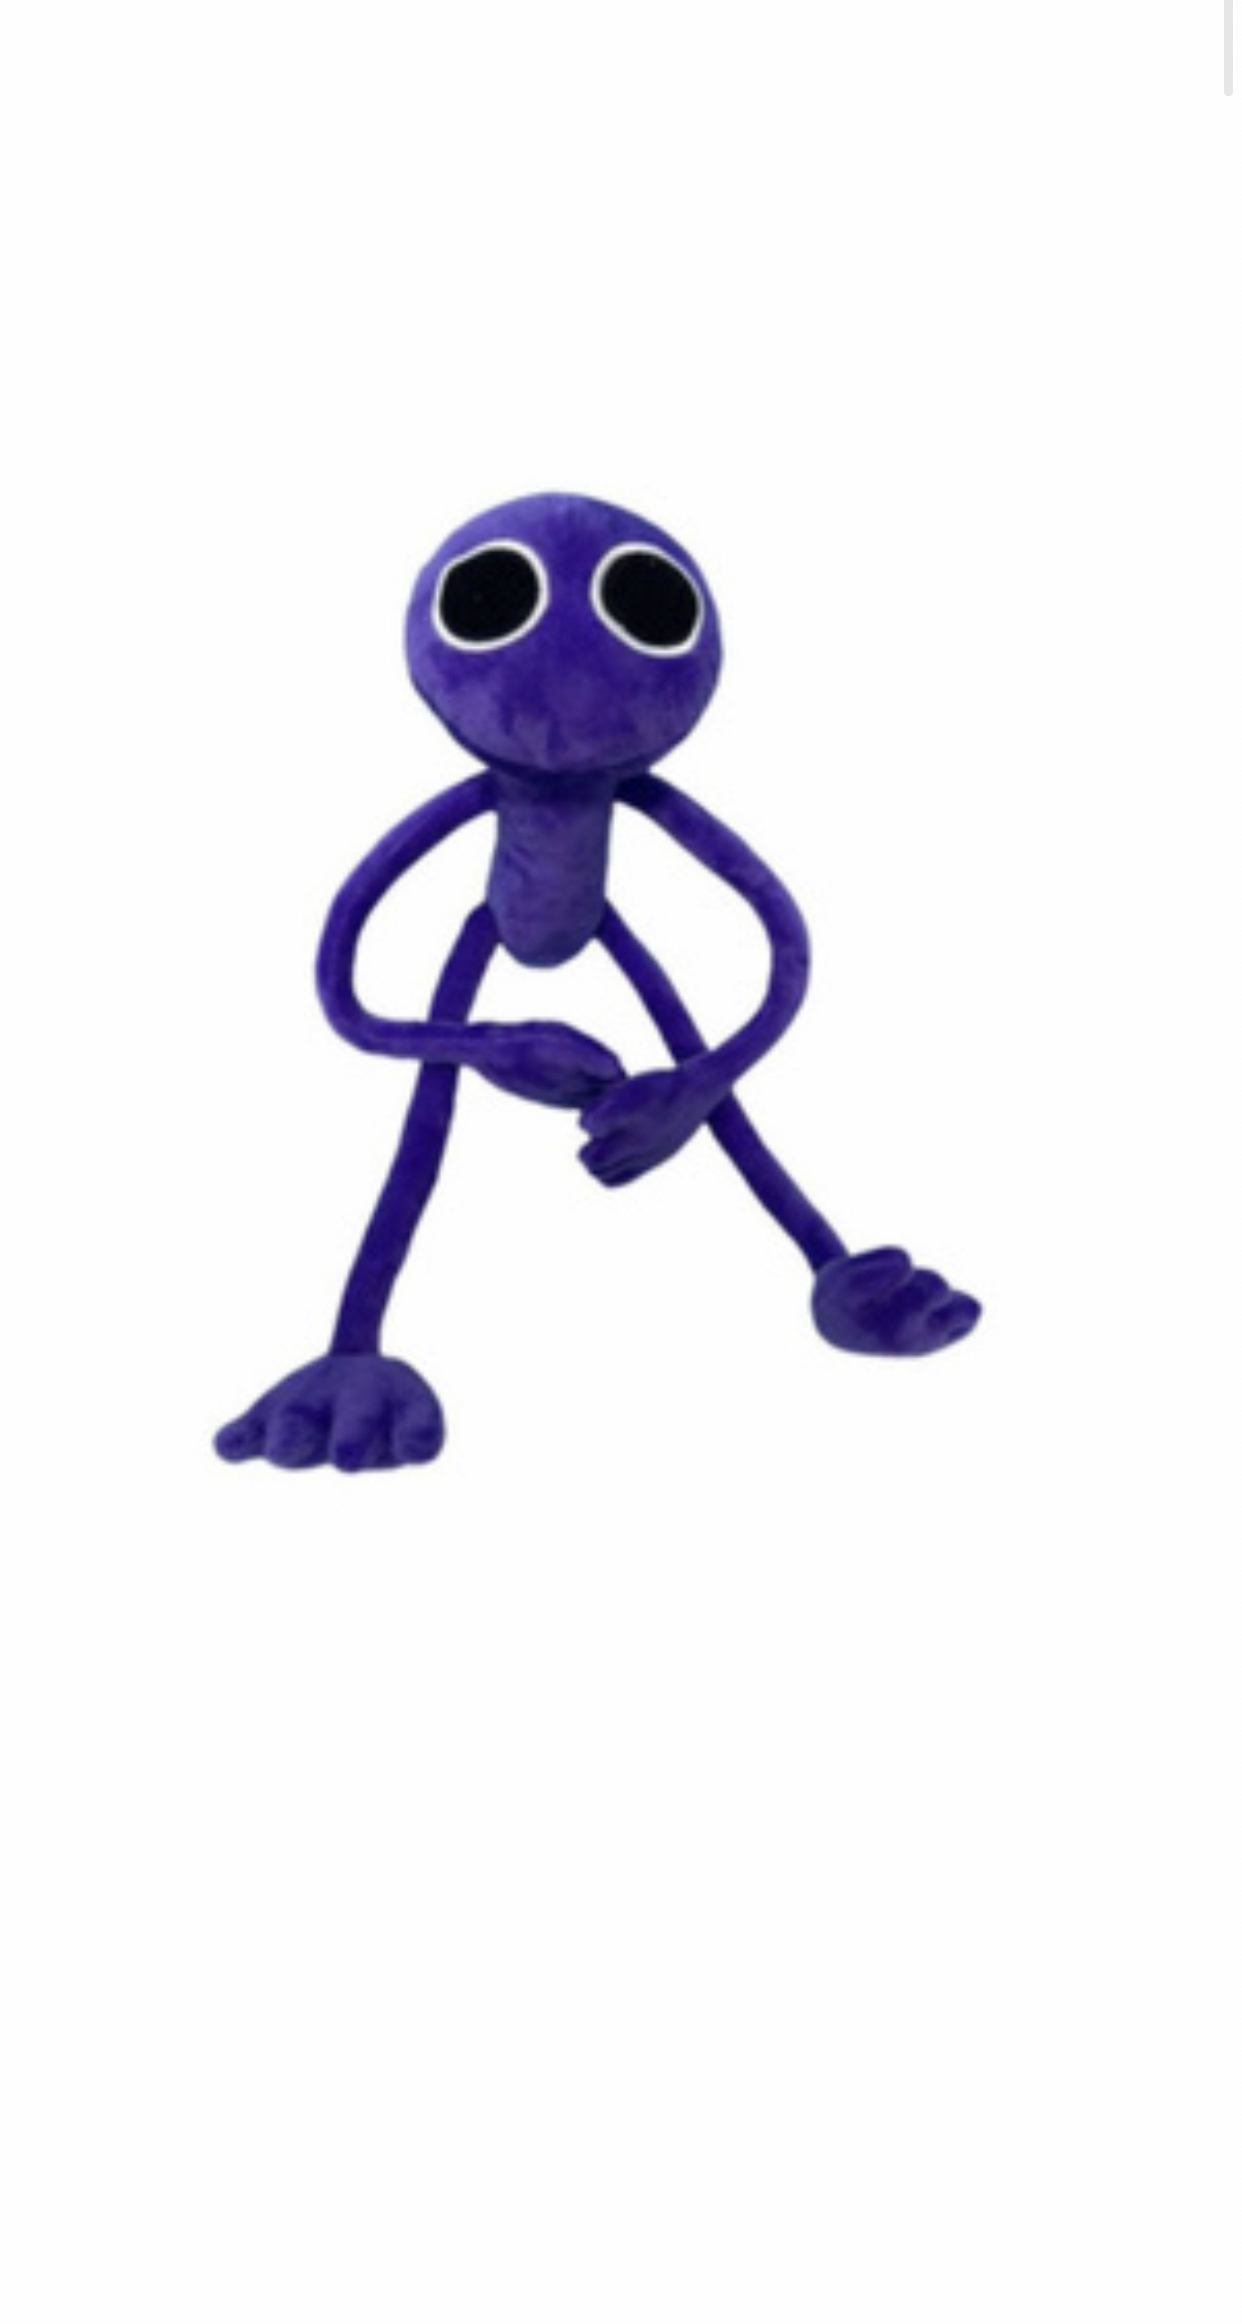 Мягкие игрушки Emily Радужные друзья, 40 см, фиолетовый, 77865 массажный развивающий коврик пазл ортодон камни мягкие фиолетовый 1 эл